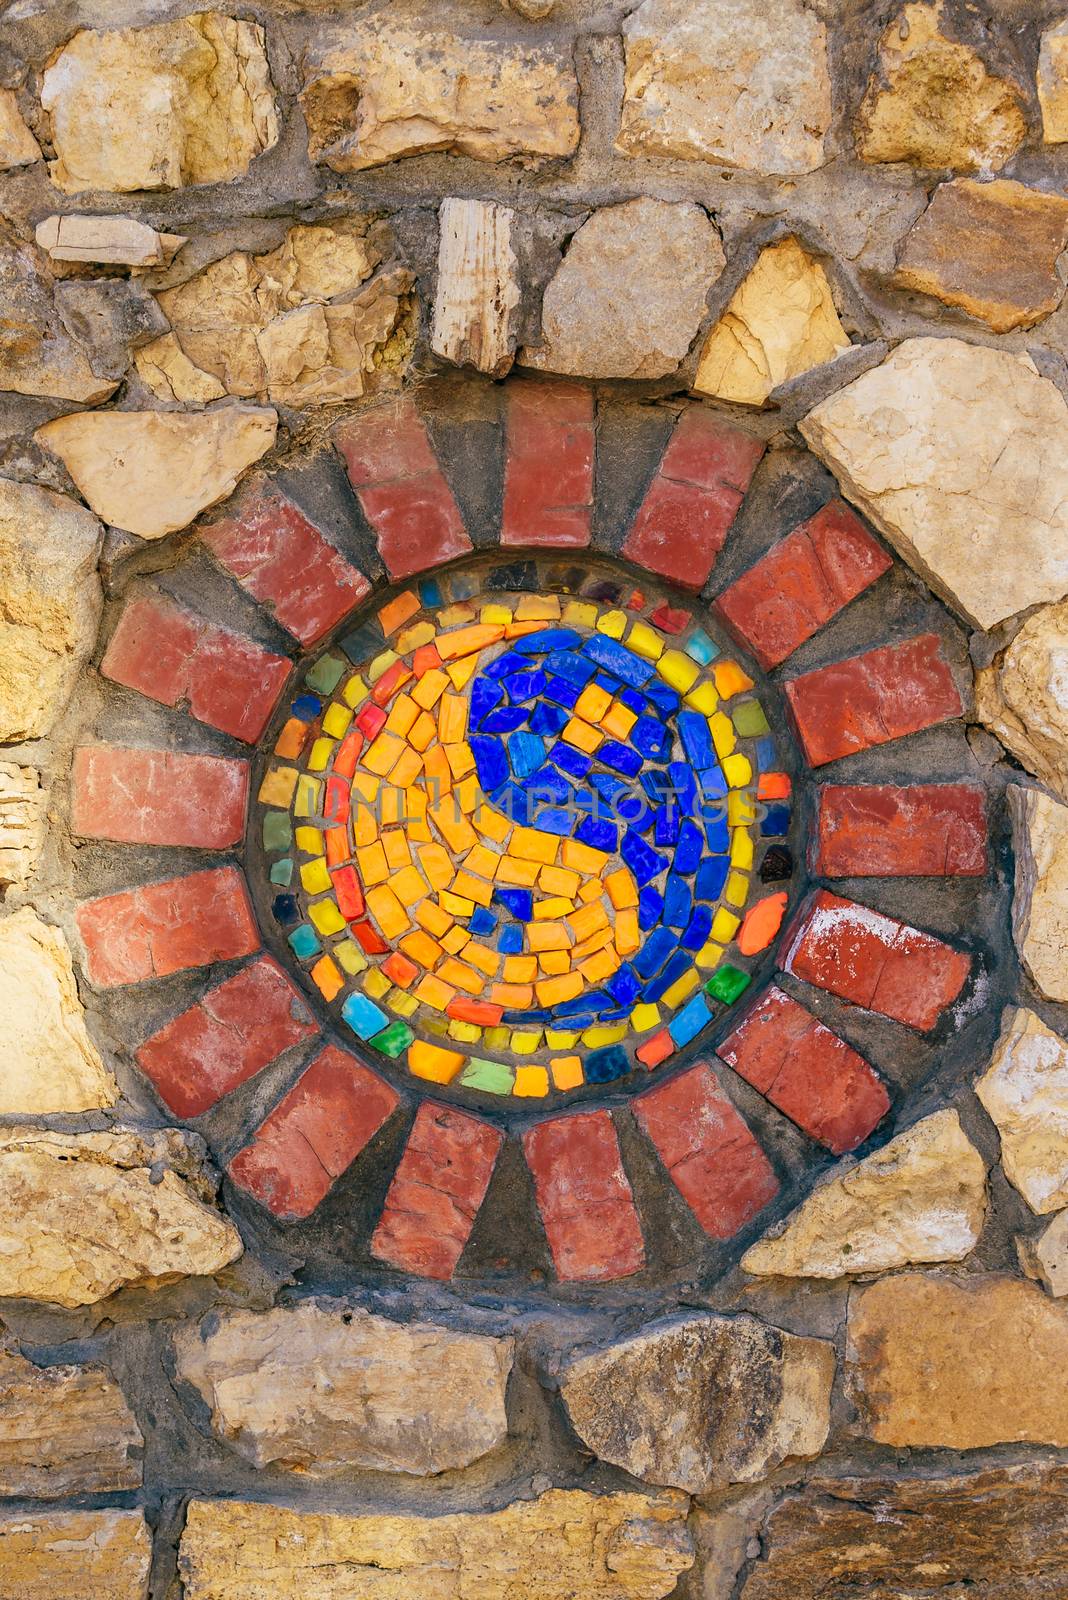 Circular mosaic religious symbol of Yin and yang on stone wall.